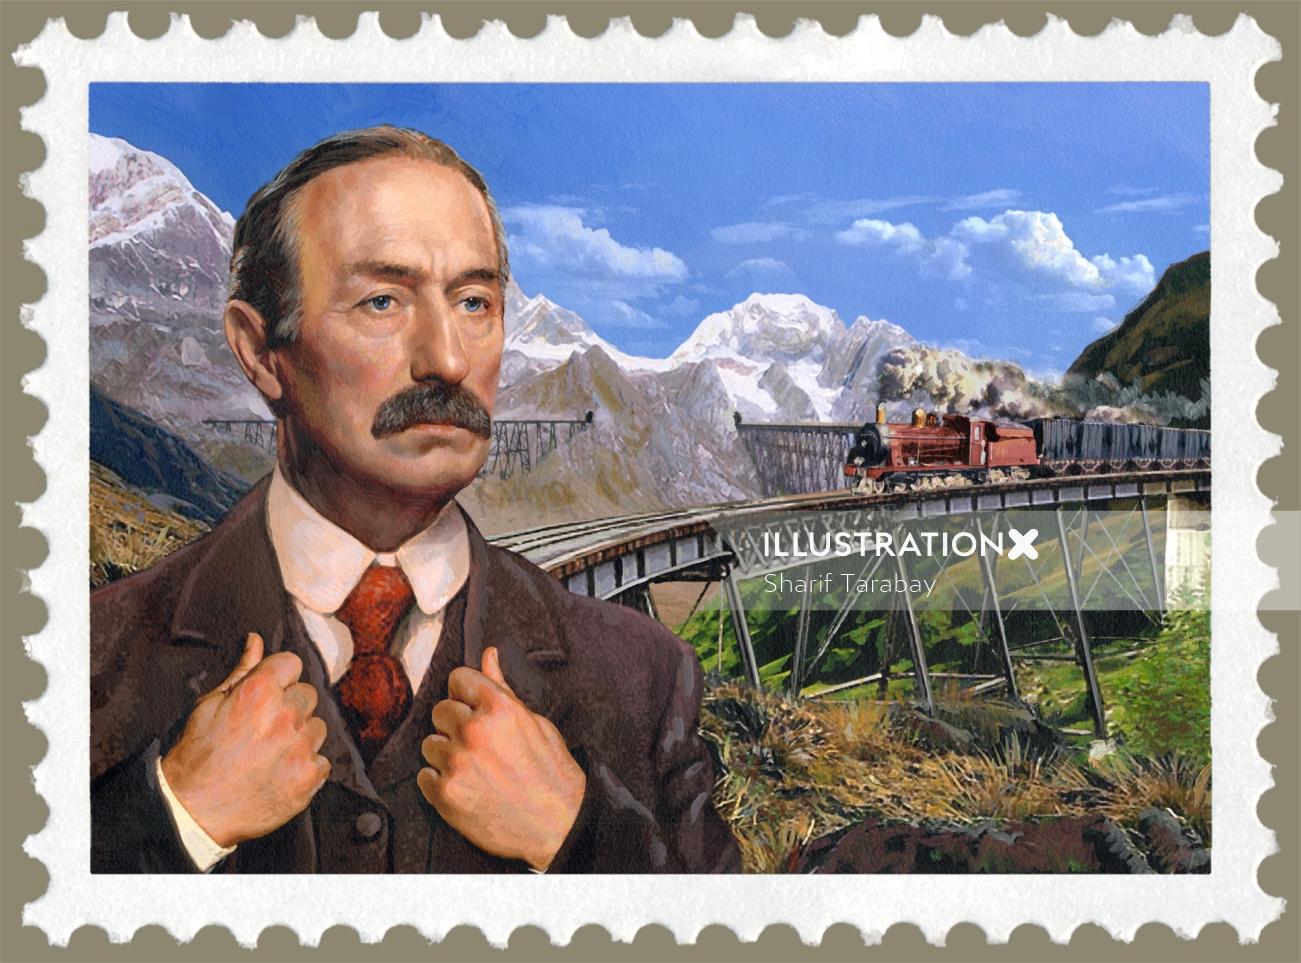 欧内斯特·马林诺夫斯基邮票插图由谢里夫·塔拉贝 (Sharif Tarabay)